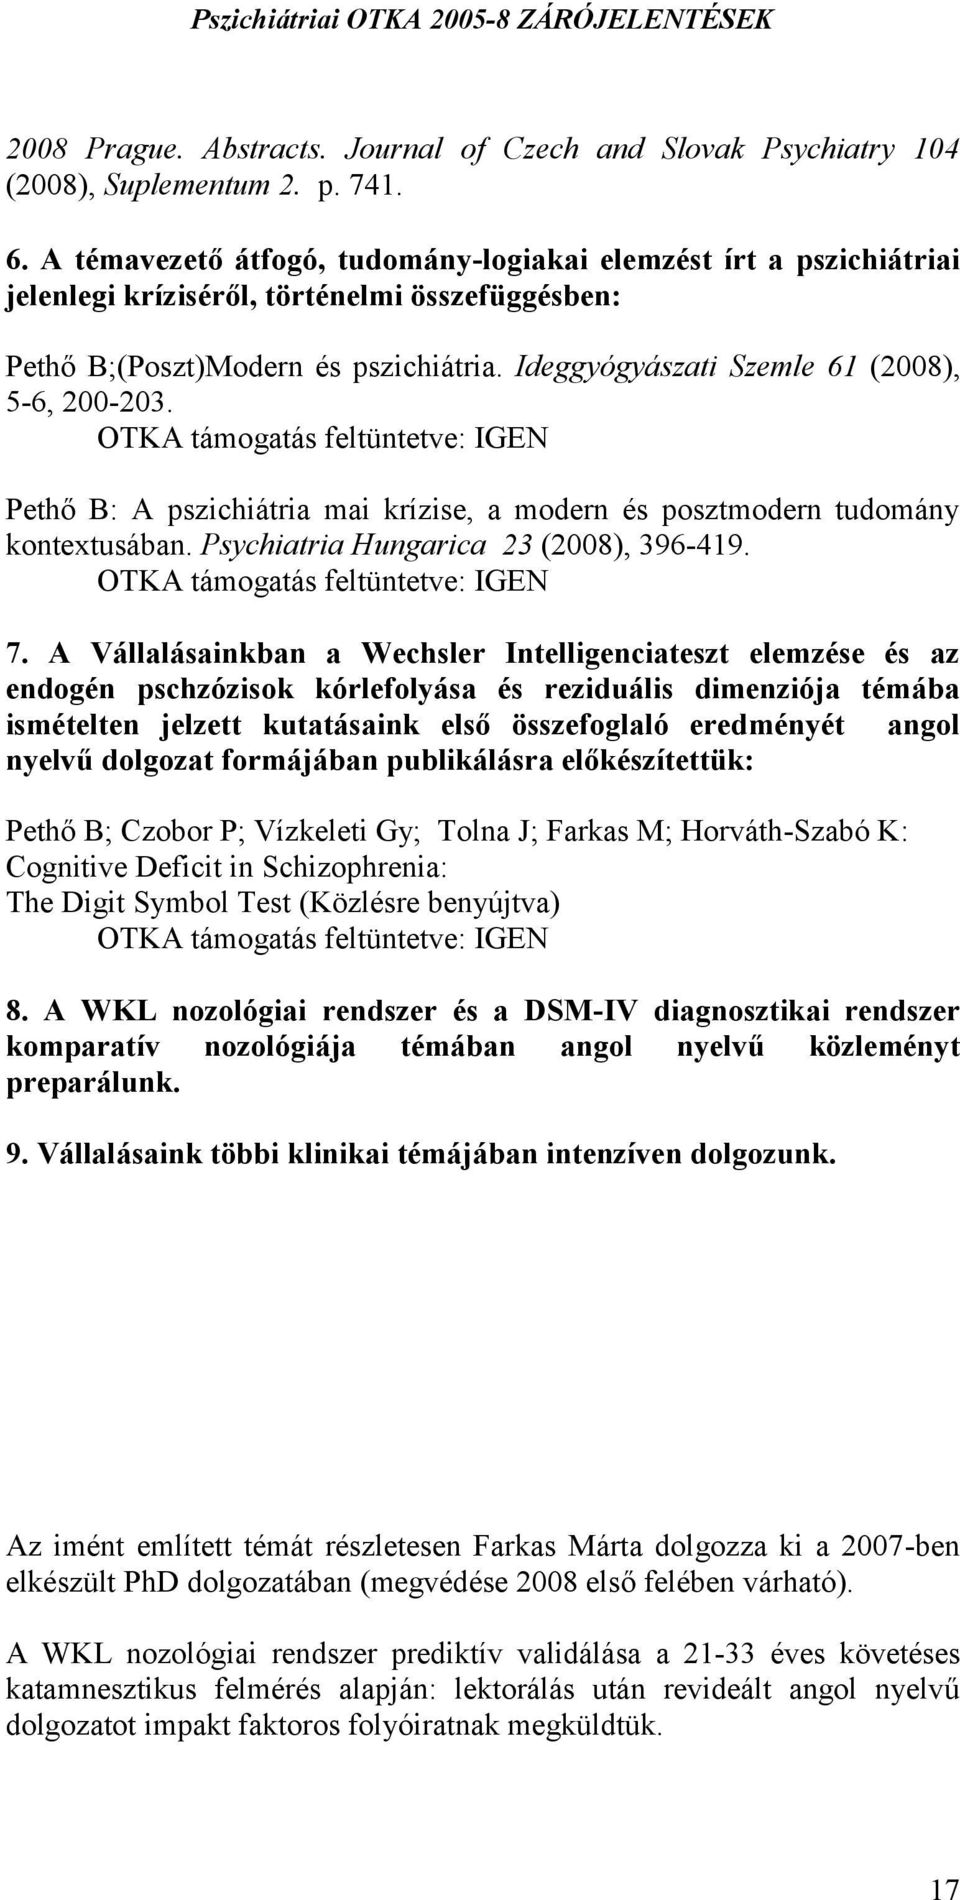 Ideggyógyászati Szemle 61 (2008), 5-6, 200-203. Pethő B: A pszichiátria mai krízise, a modern és posztmodern tudomány kontextusában. Psychiatria Hungarica 23 (2008), 396-419. 7.